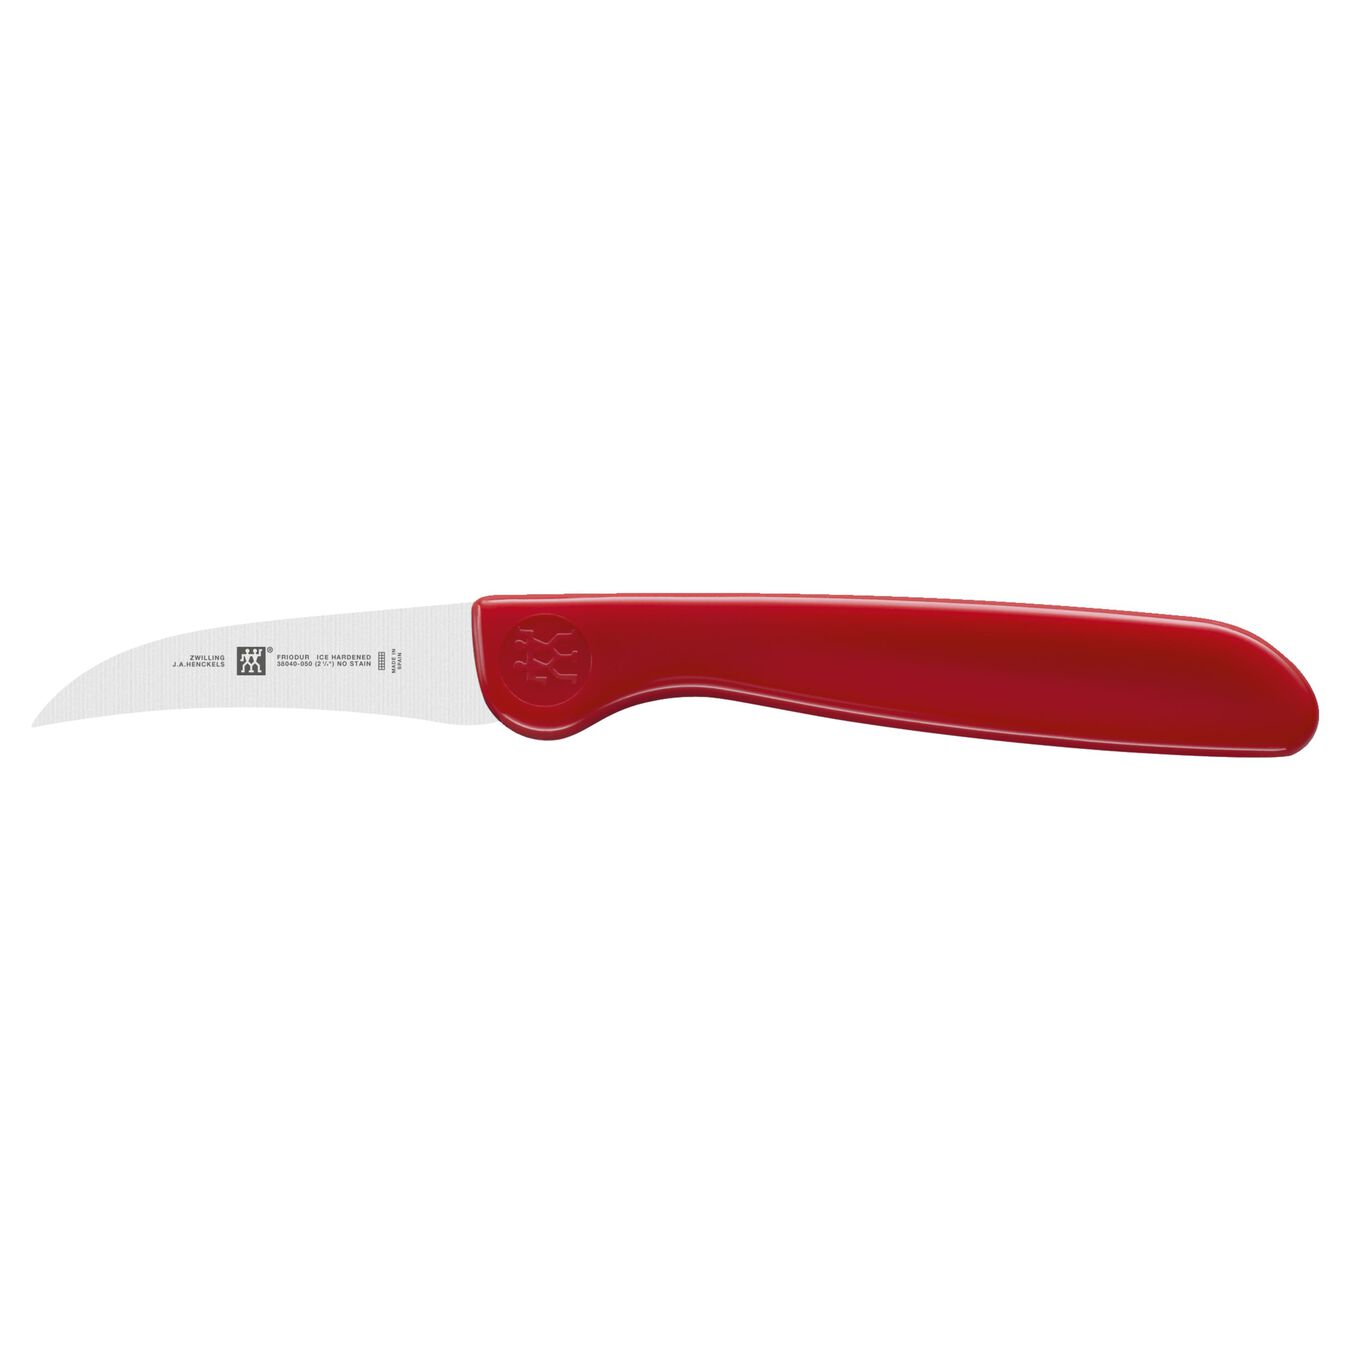 Tournier / Skalkniv böjd 5 cm, Röd,,large 1